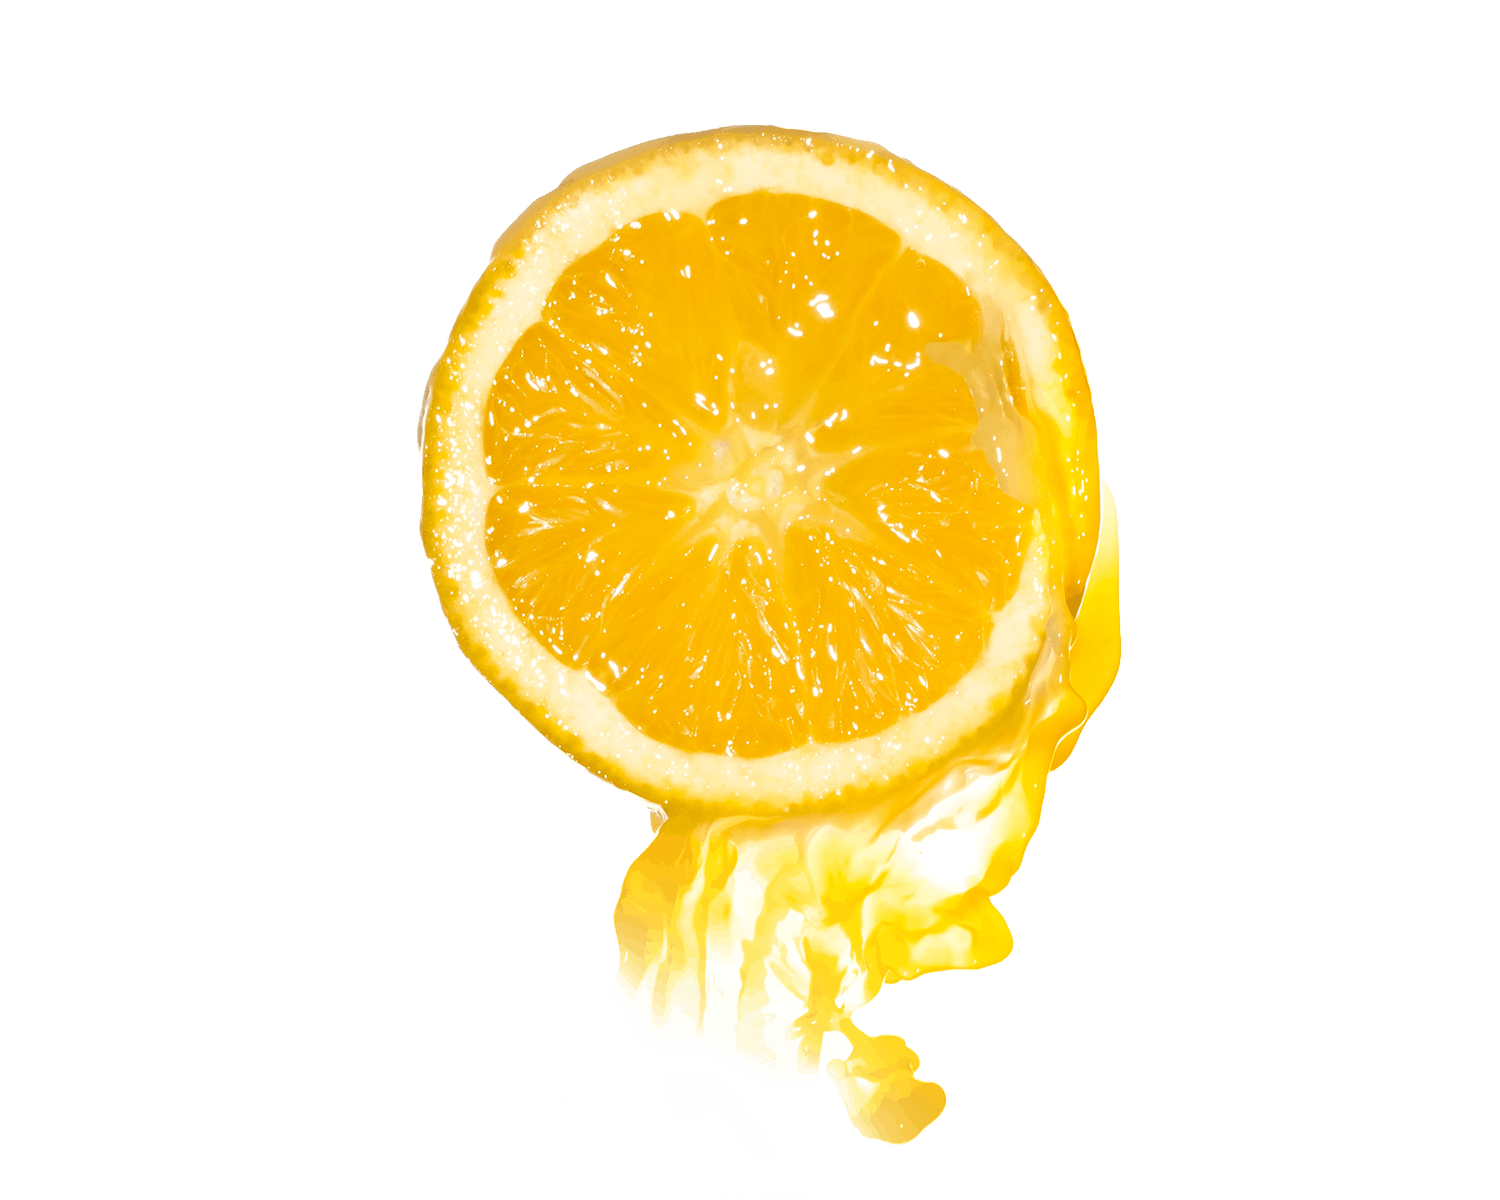 Orange slice with juice splash